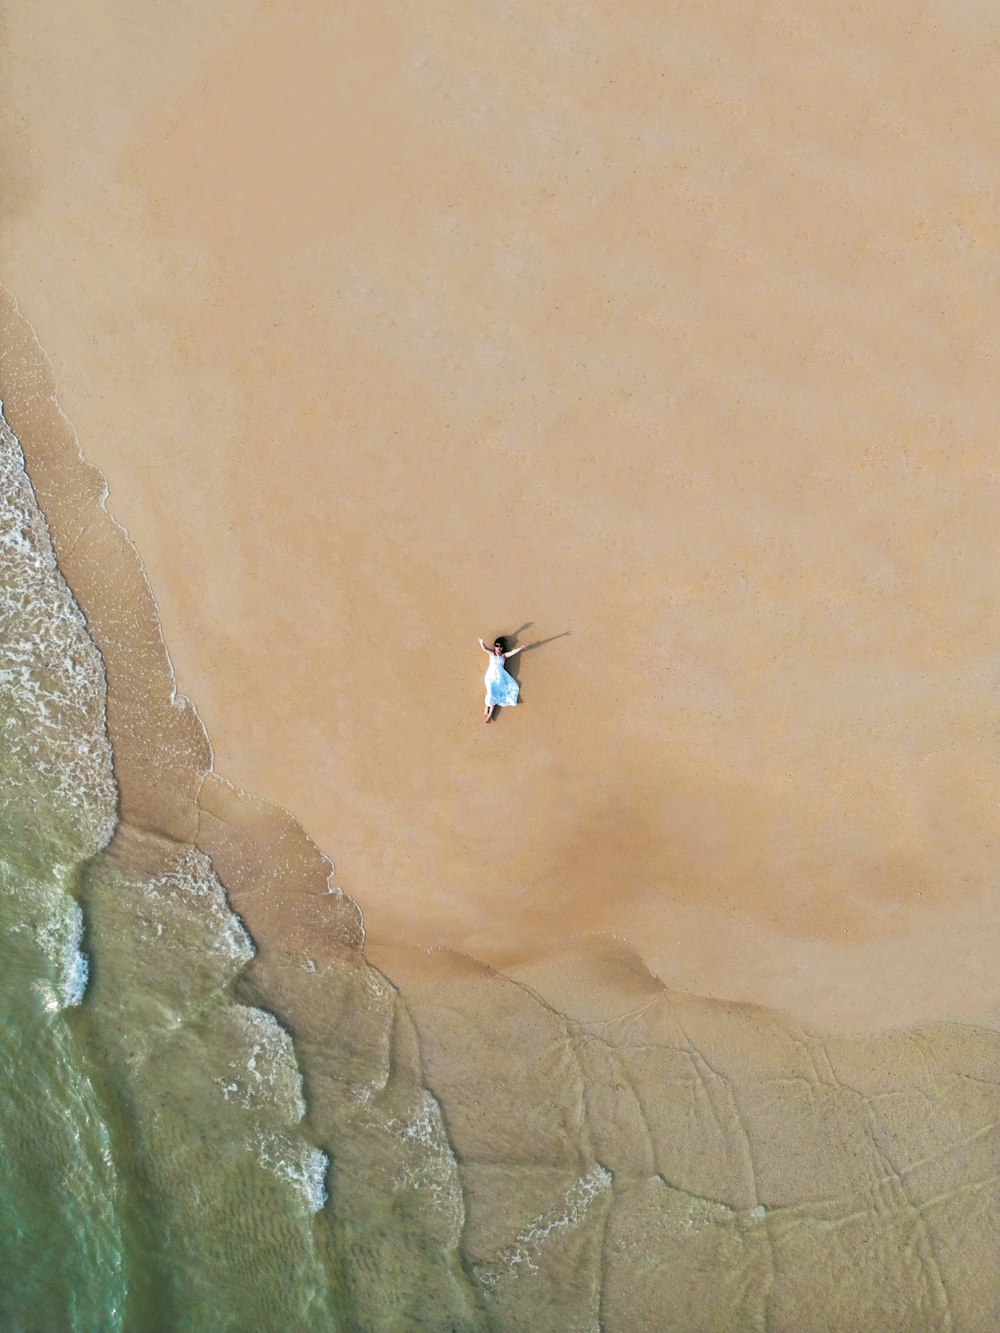 海でパラセーリングをしている人の空中写真